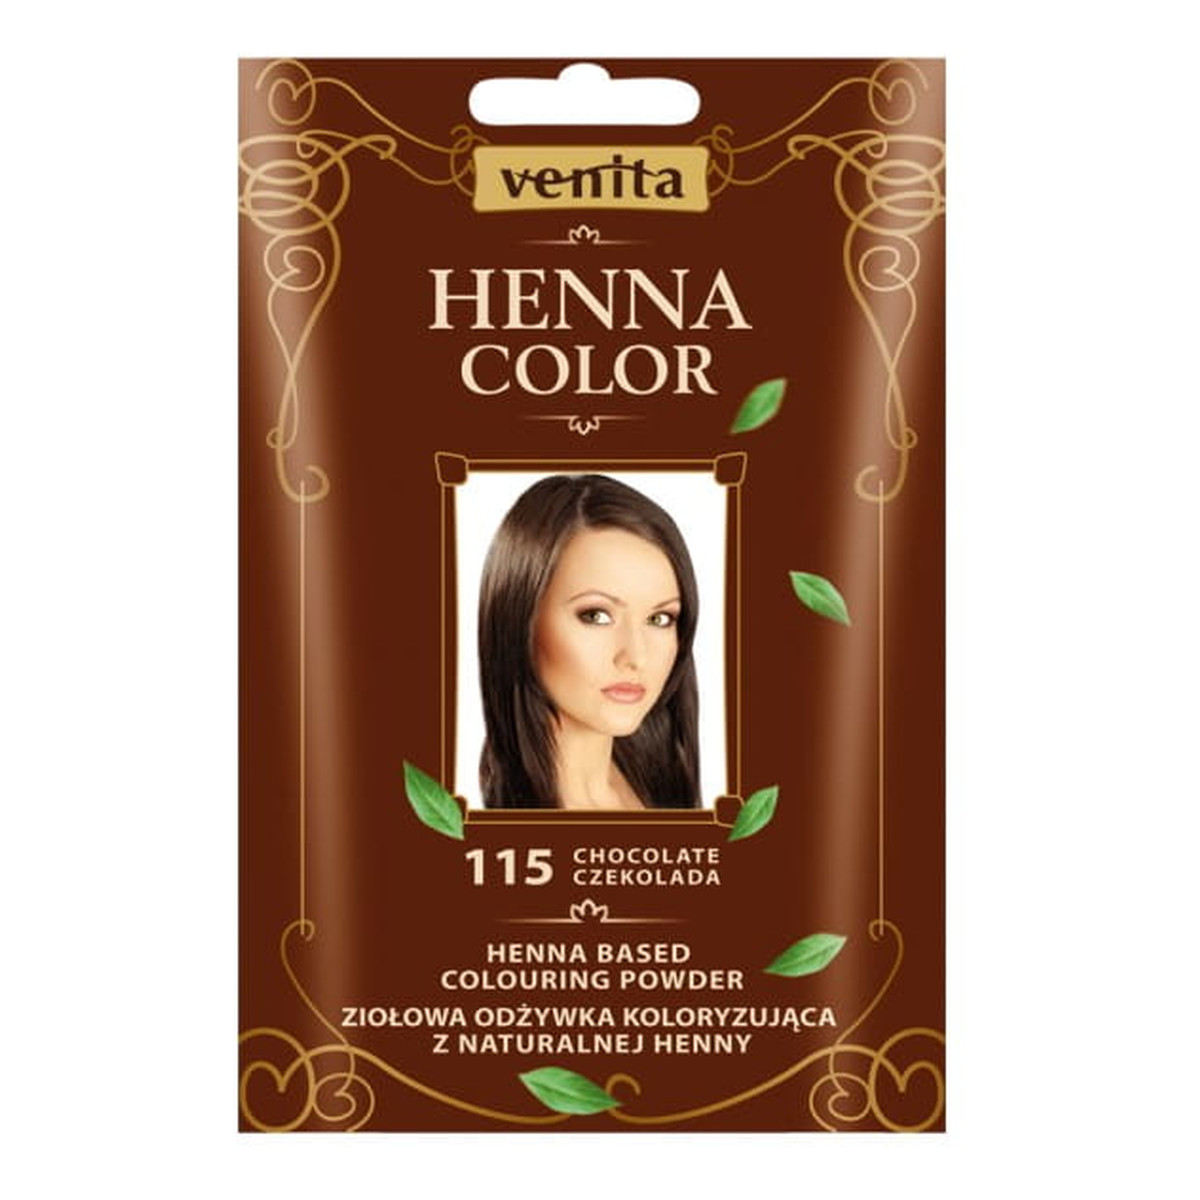 Venita Henna Color Ziołowa odżywka koloryzująca saszetka 30g